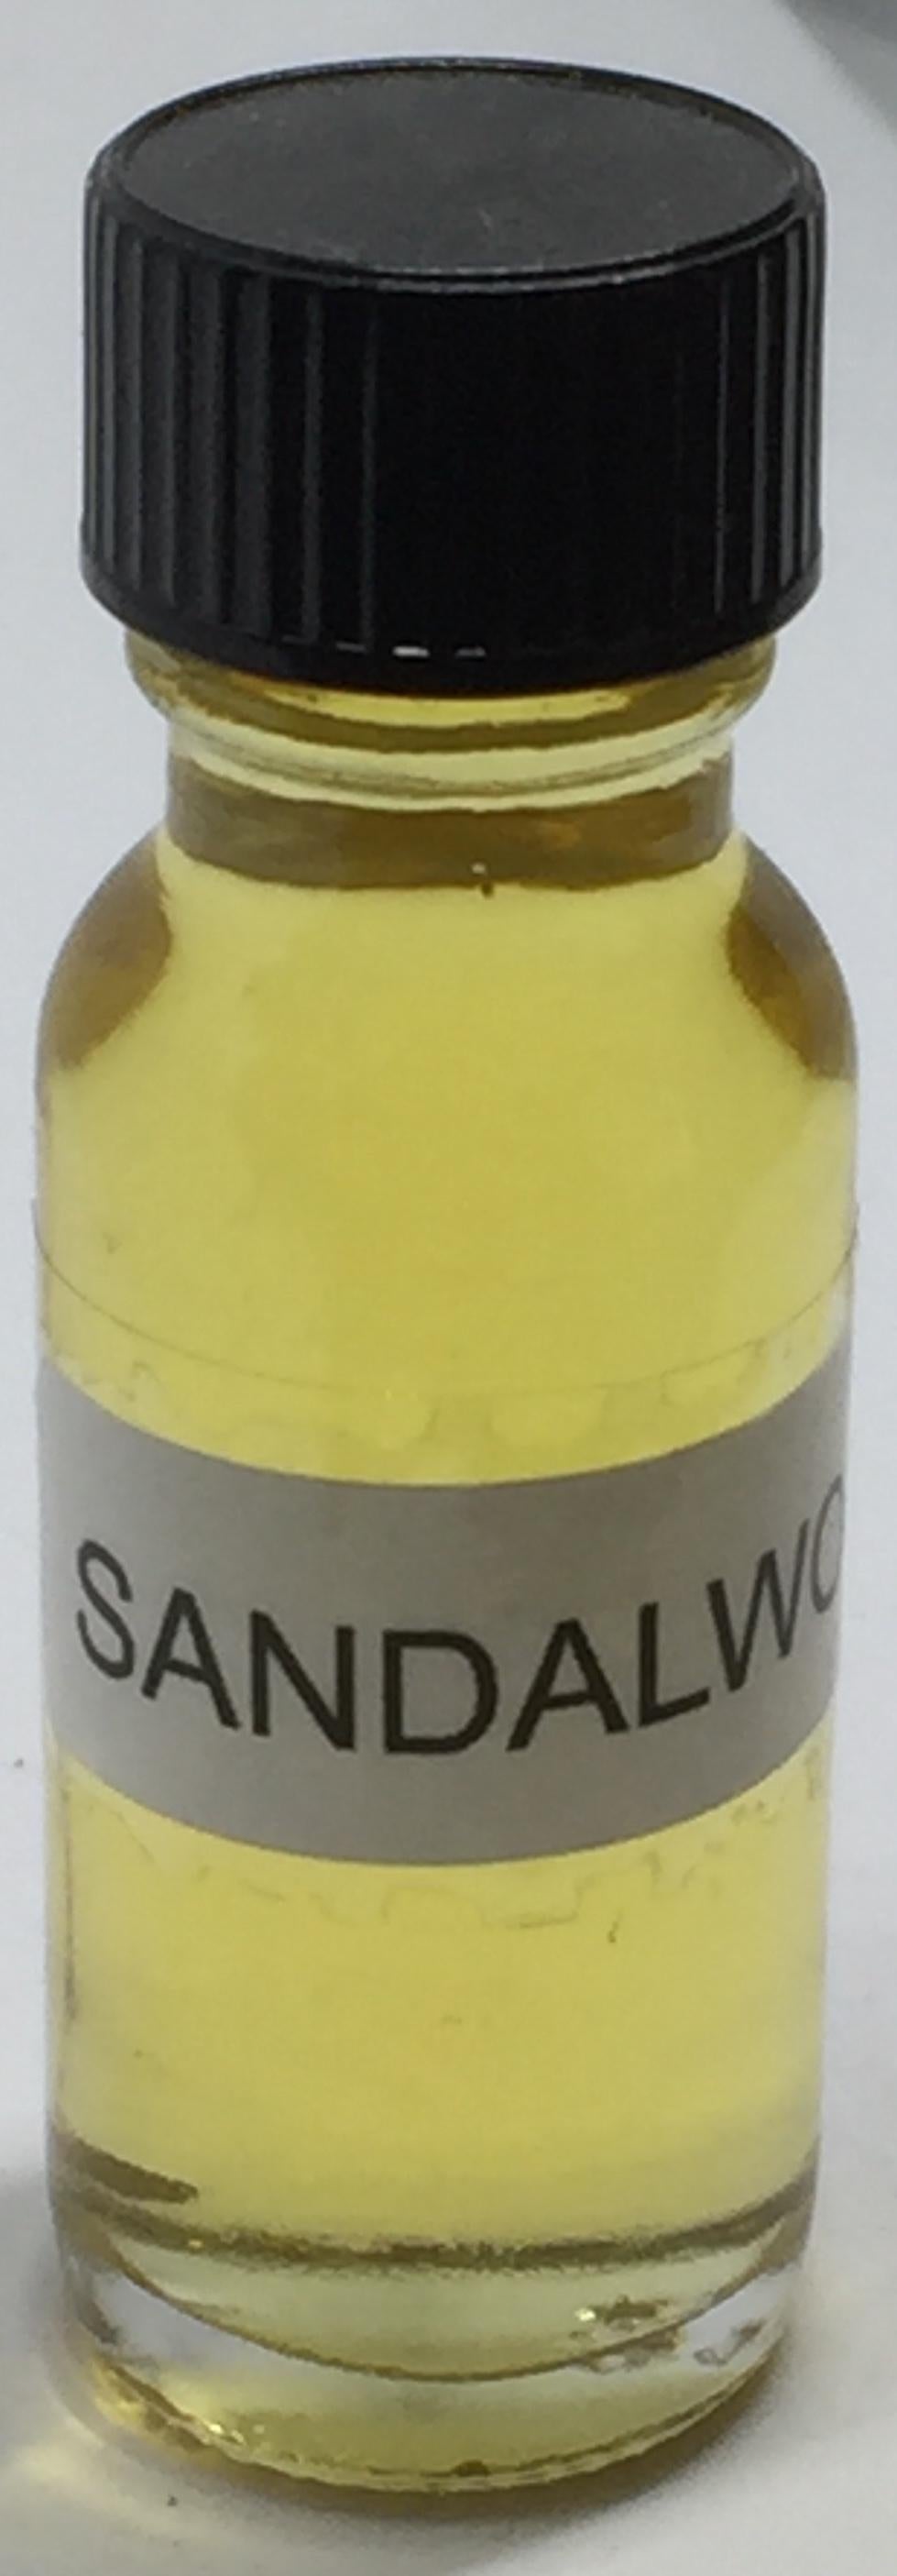 Sandalwood Fragrance Burning Oil